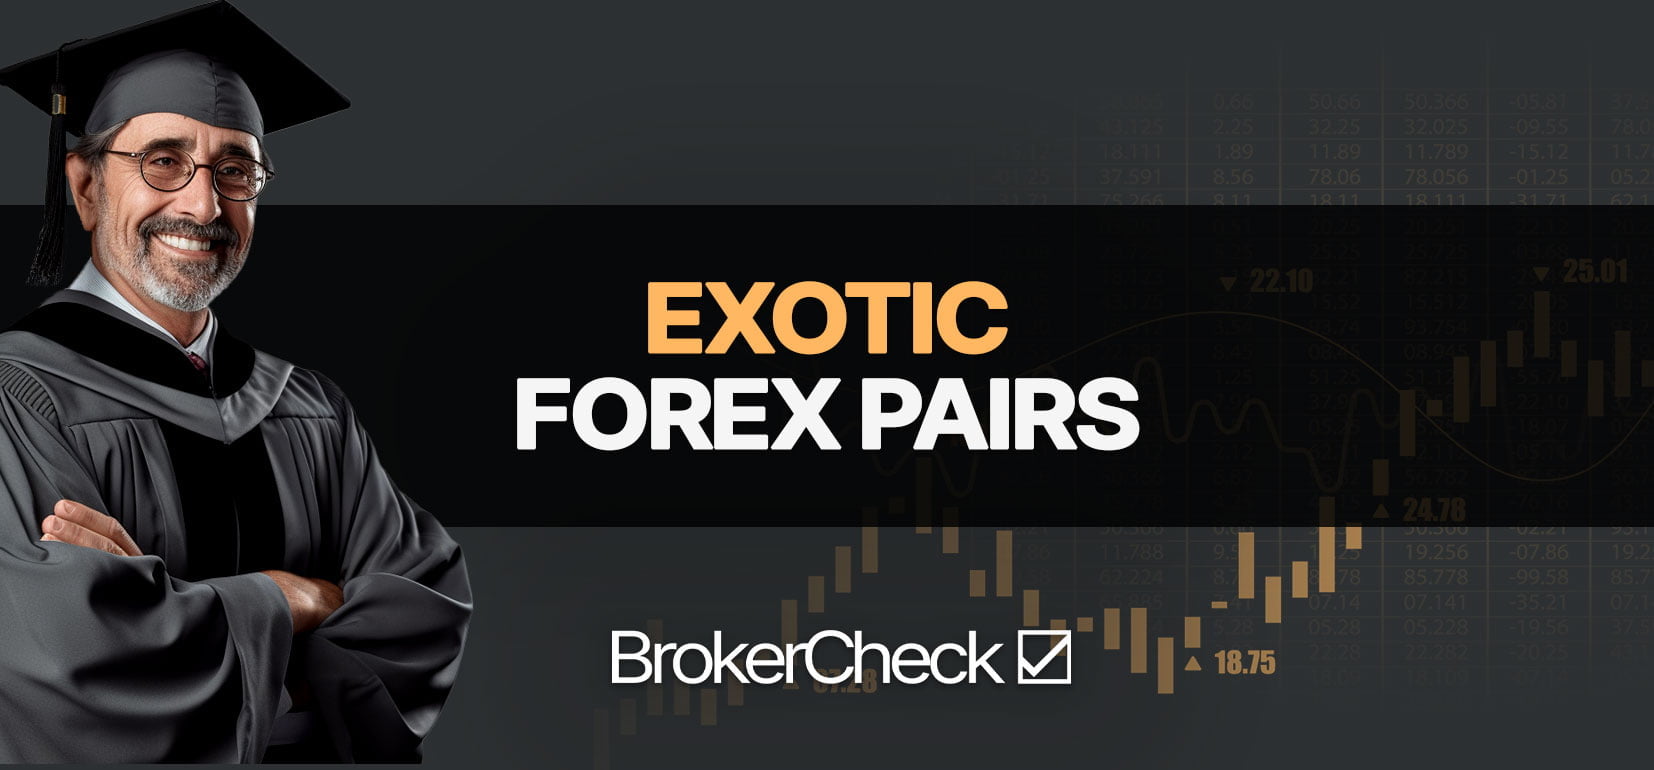 Esotico Forex Coppie: esempi, strategia, guida al trading